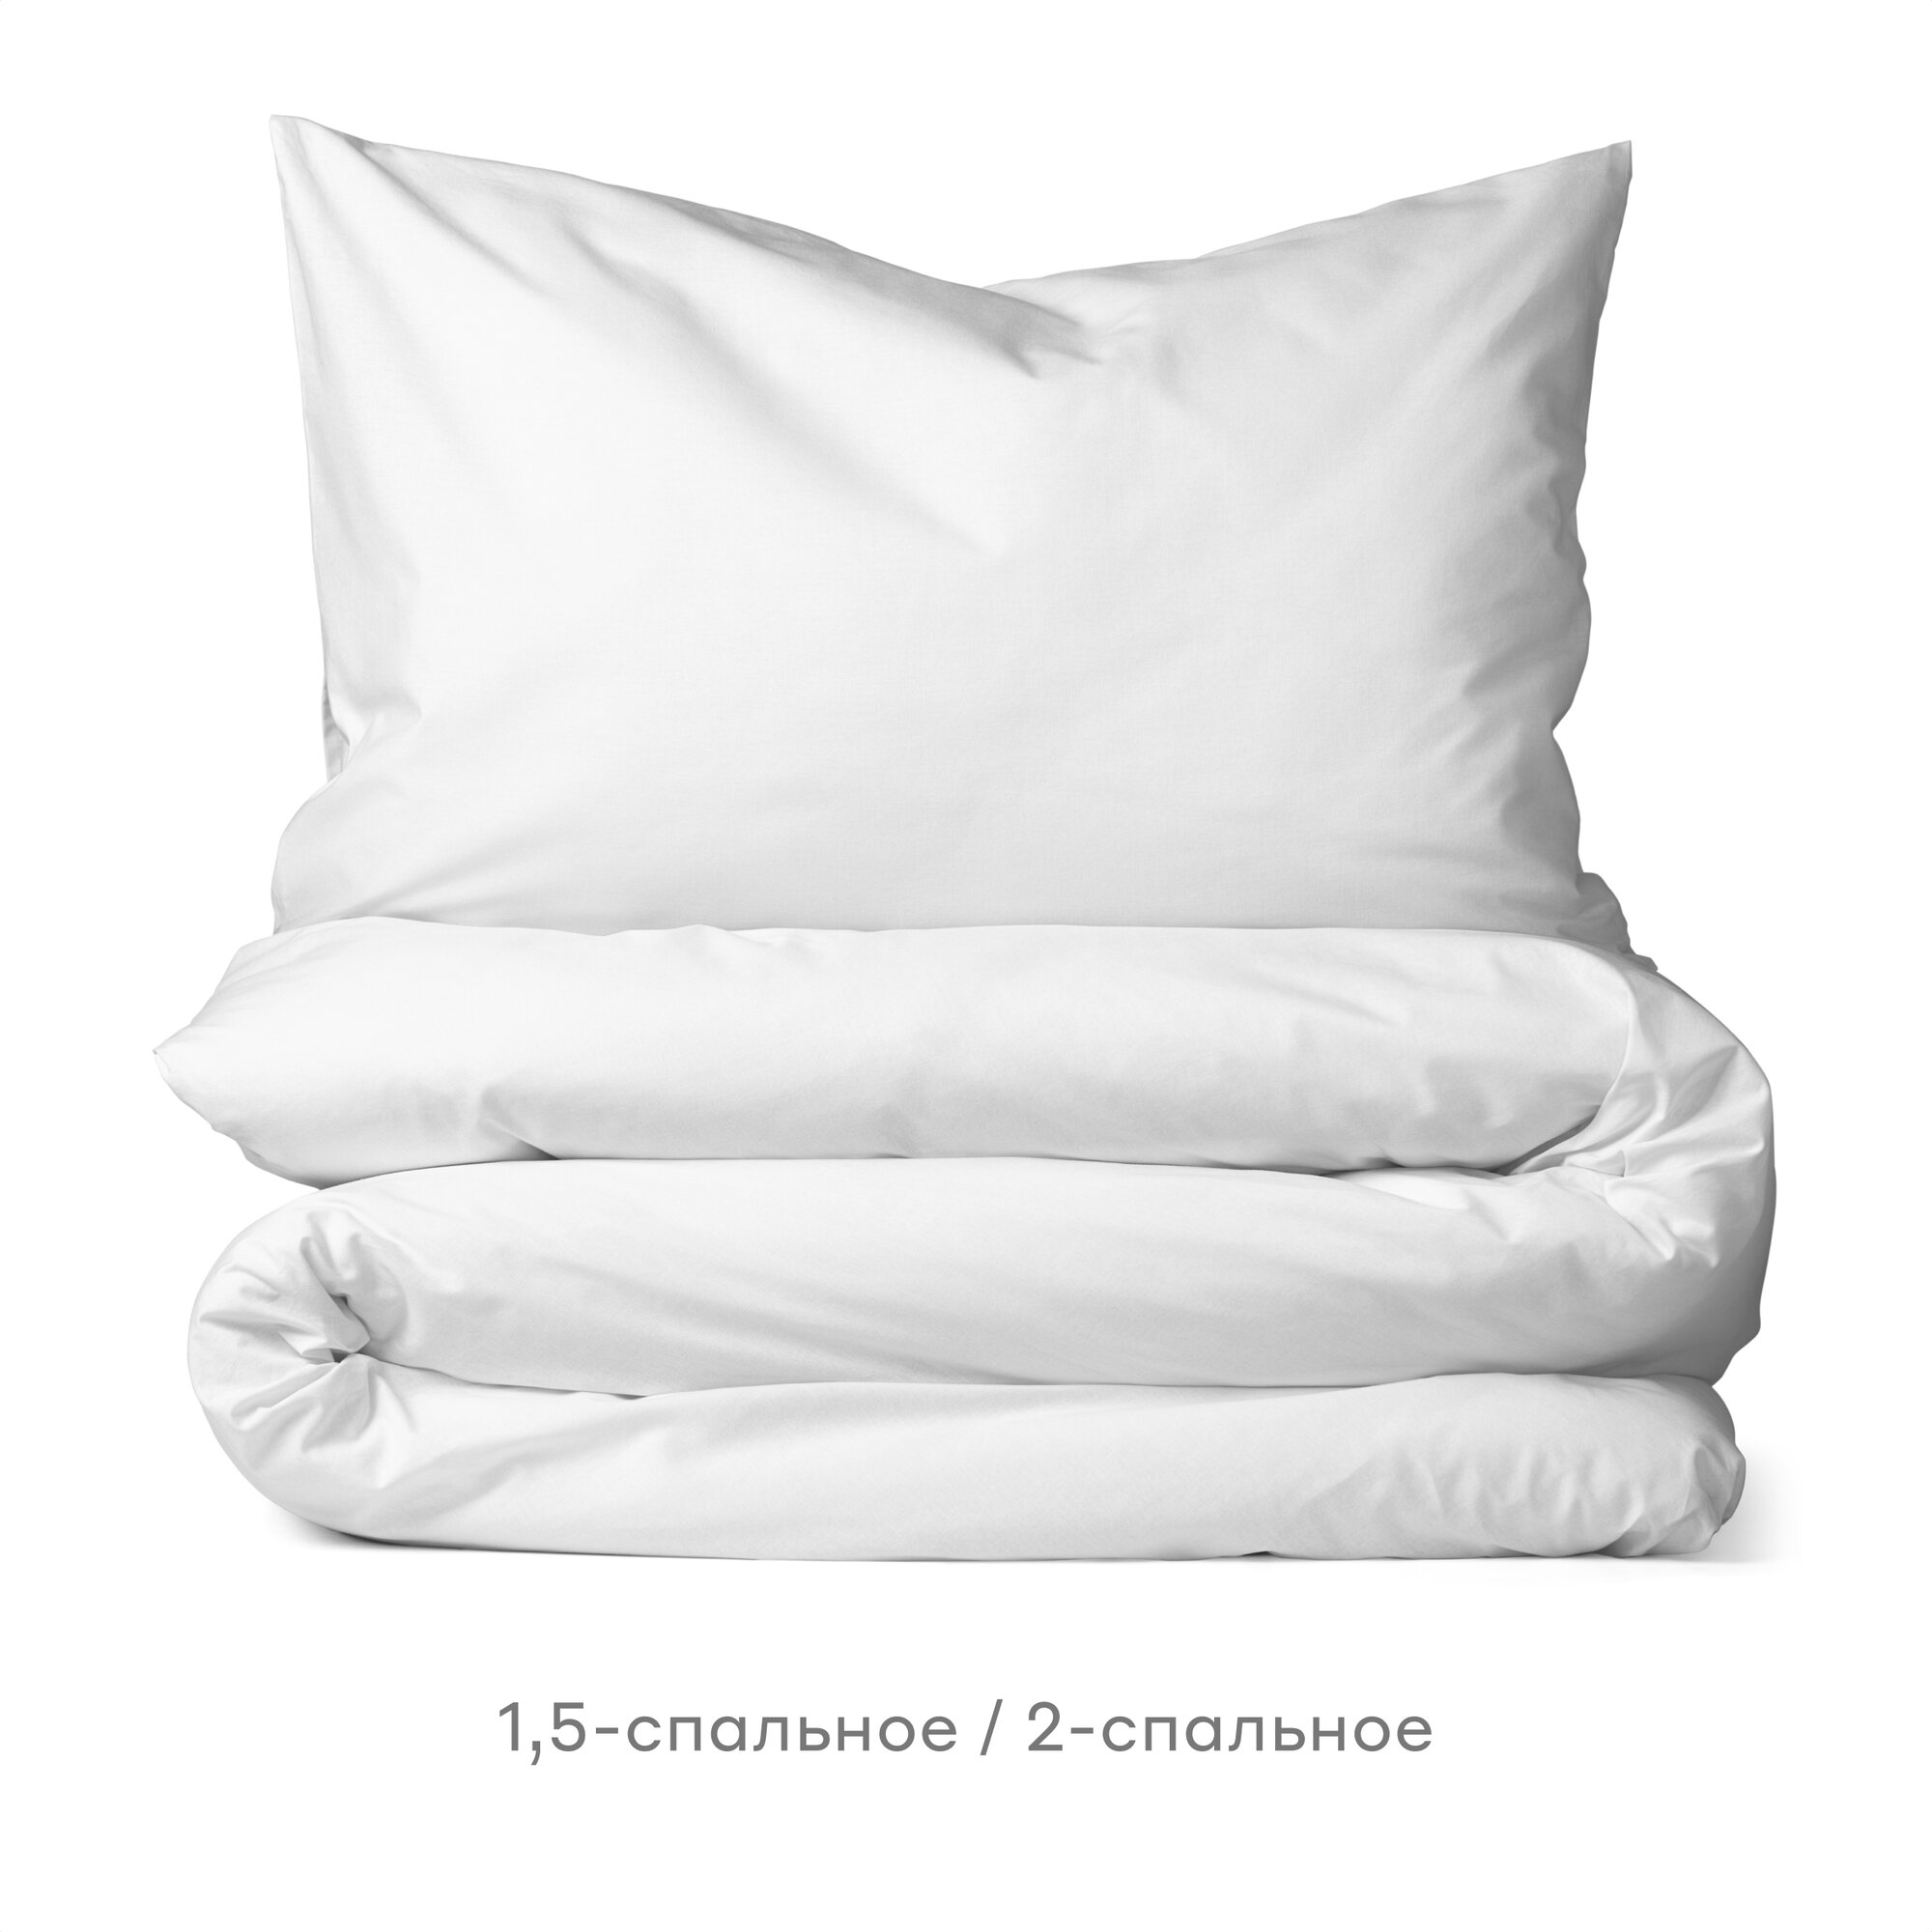 Комплект постельного белья Pragma Telso IK, 2-спальное, перкаль, облачный белый